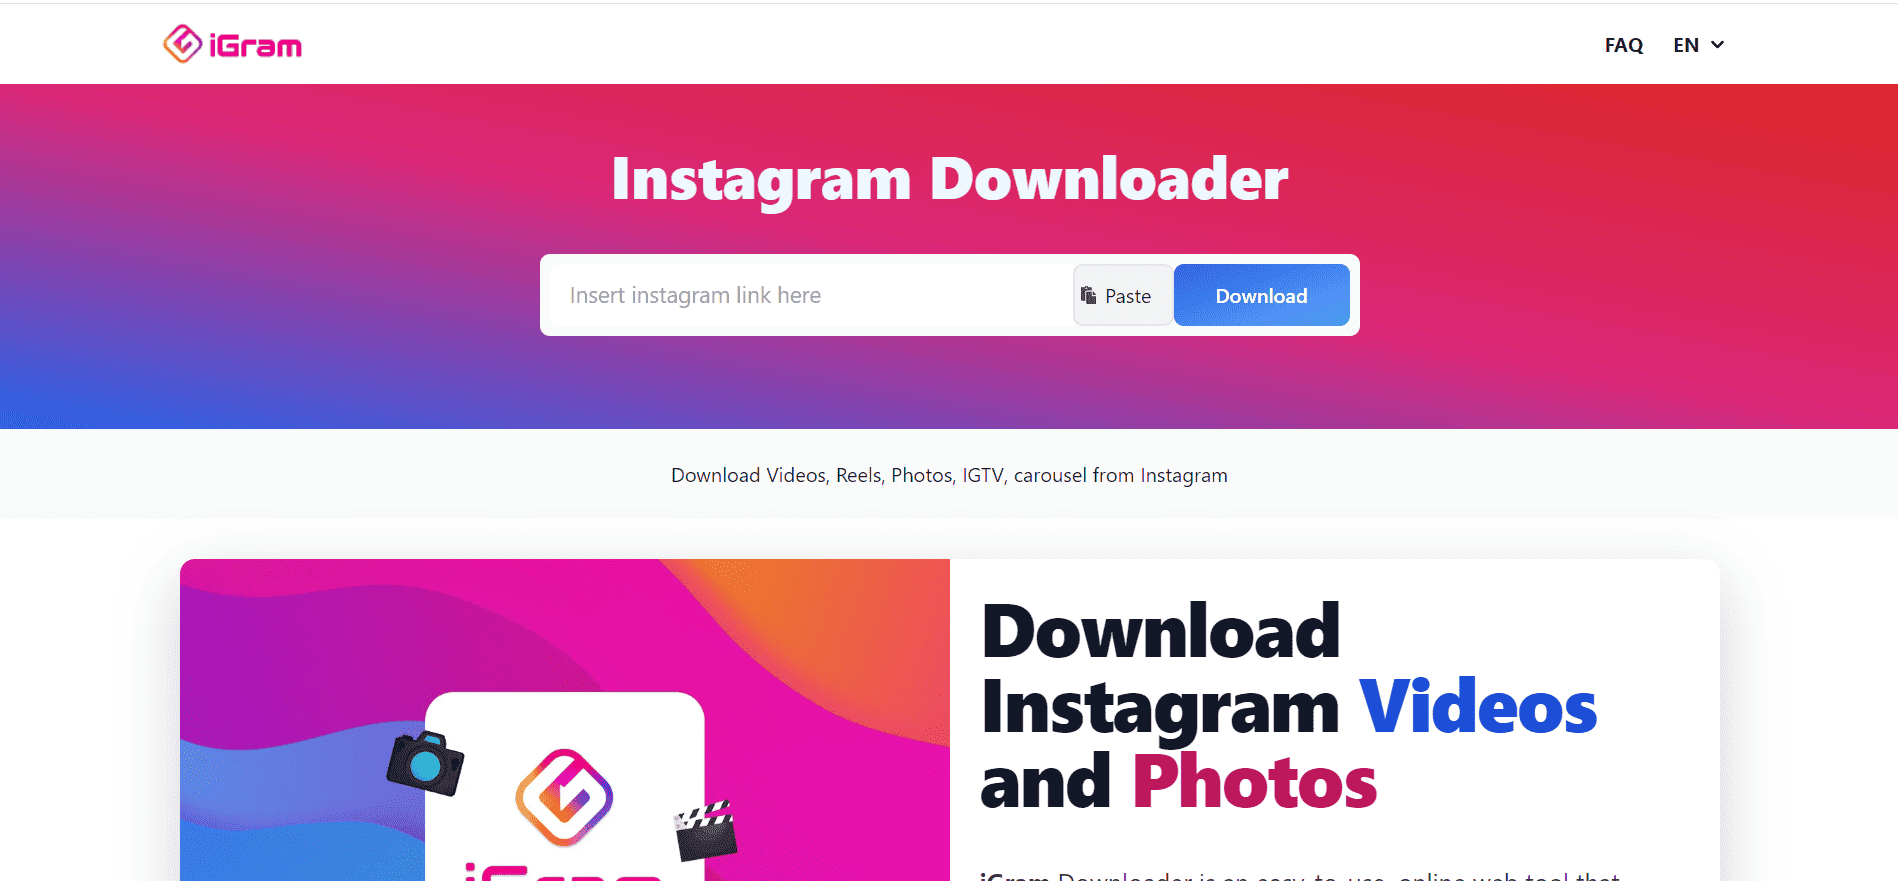 IGram - Instagram Downloader